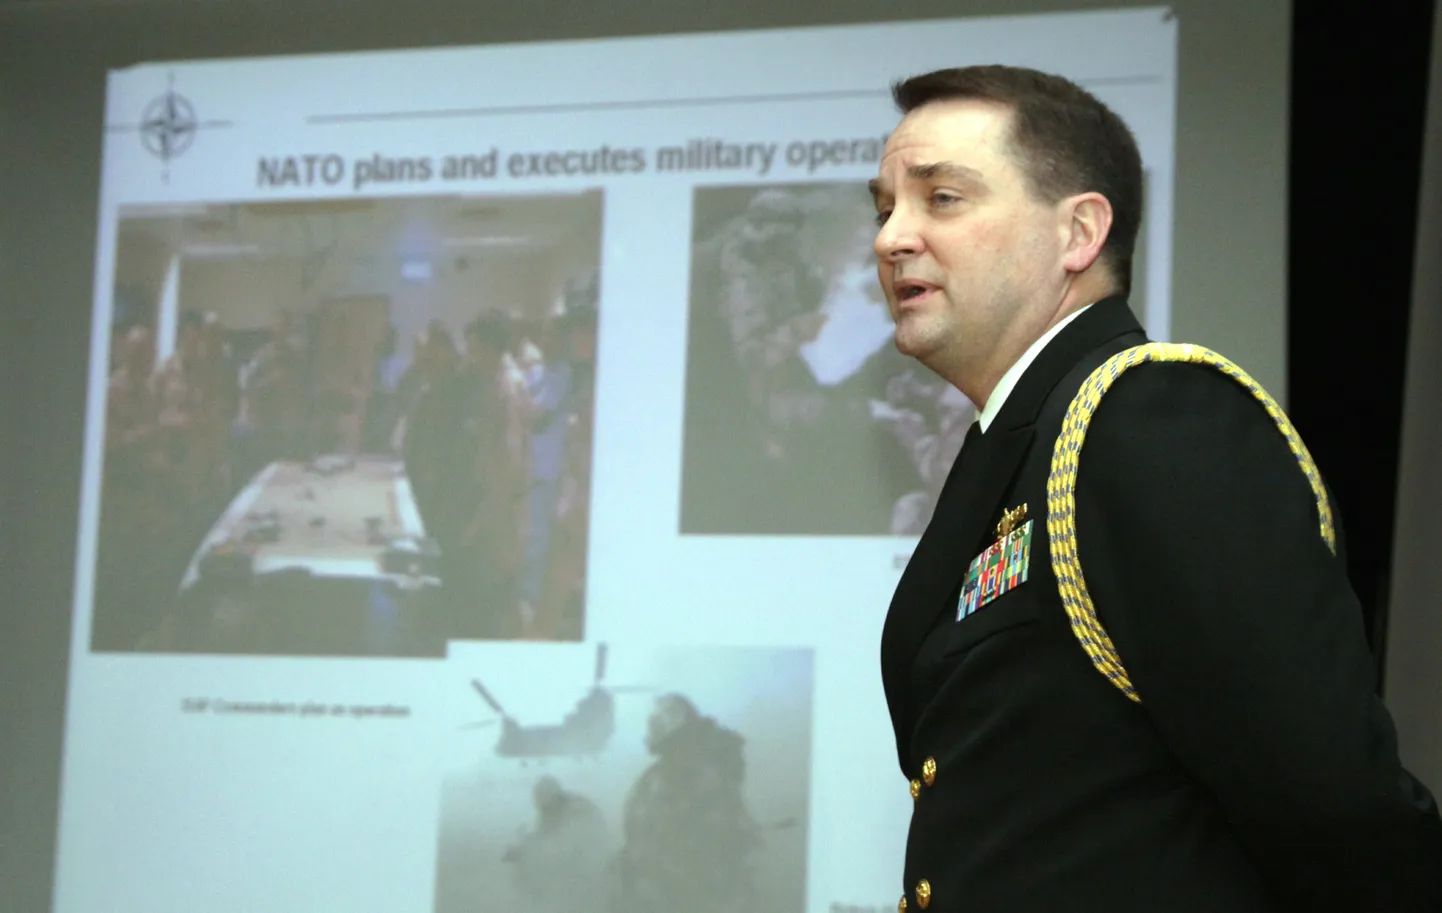 Ameerika Ühendriikide suursaatkonna mereväeatašee Kip Henderson rääkis Pärnu kooliõpilastele NATOst.